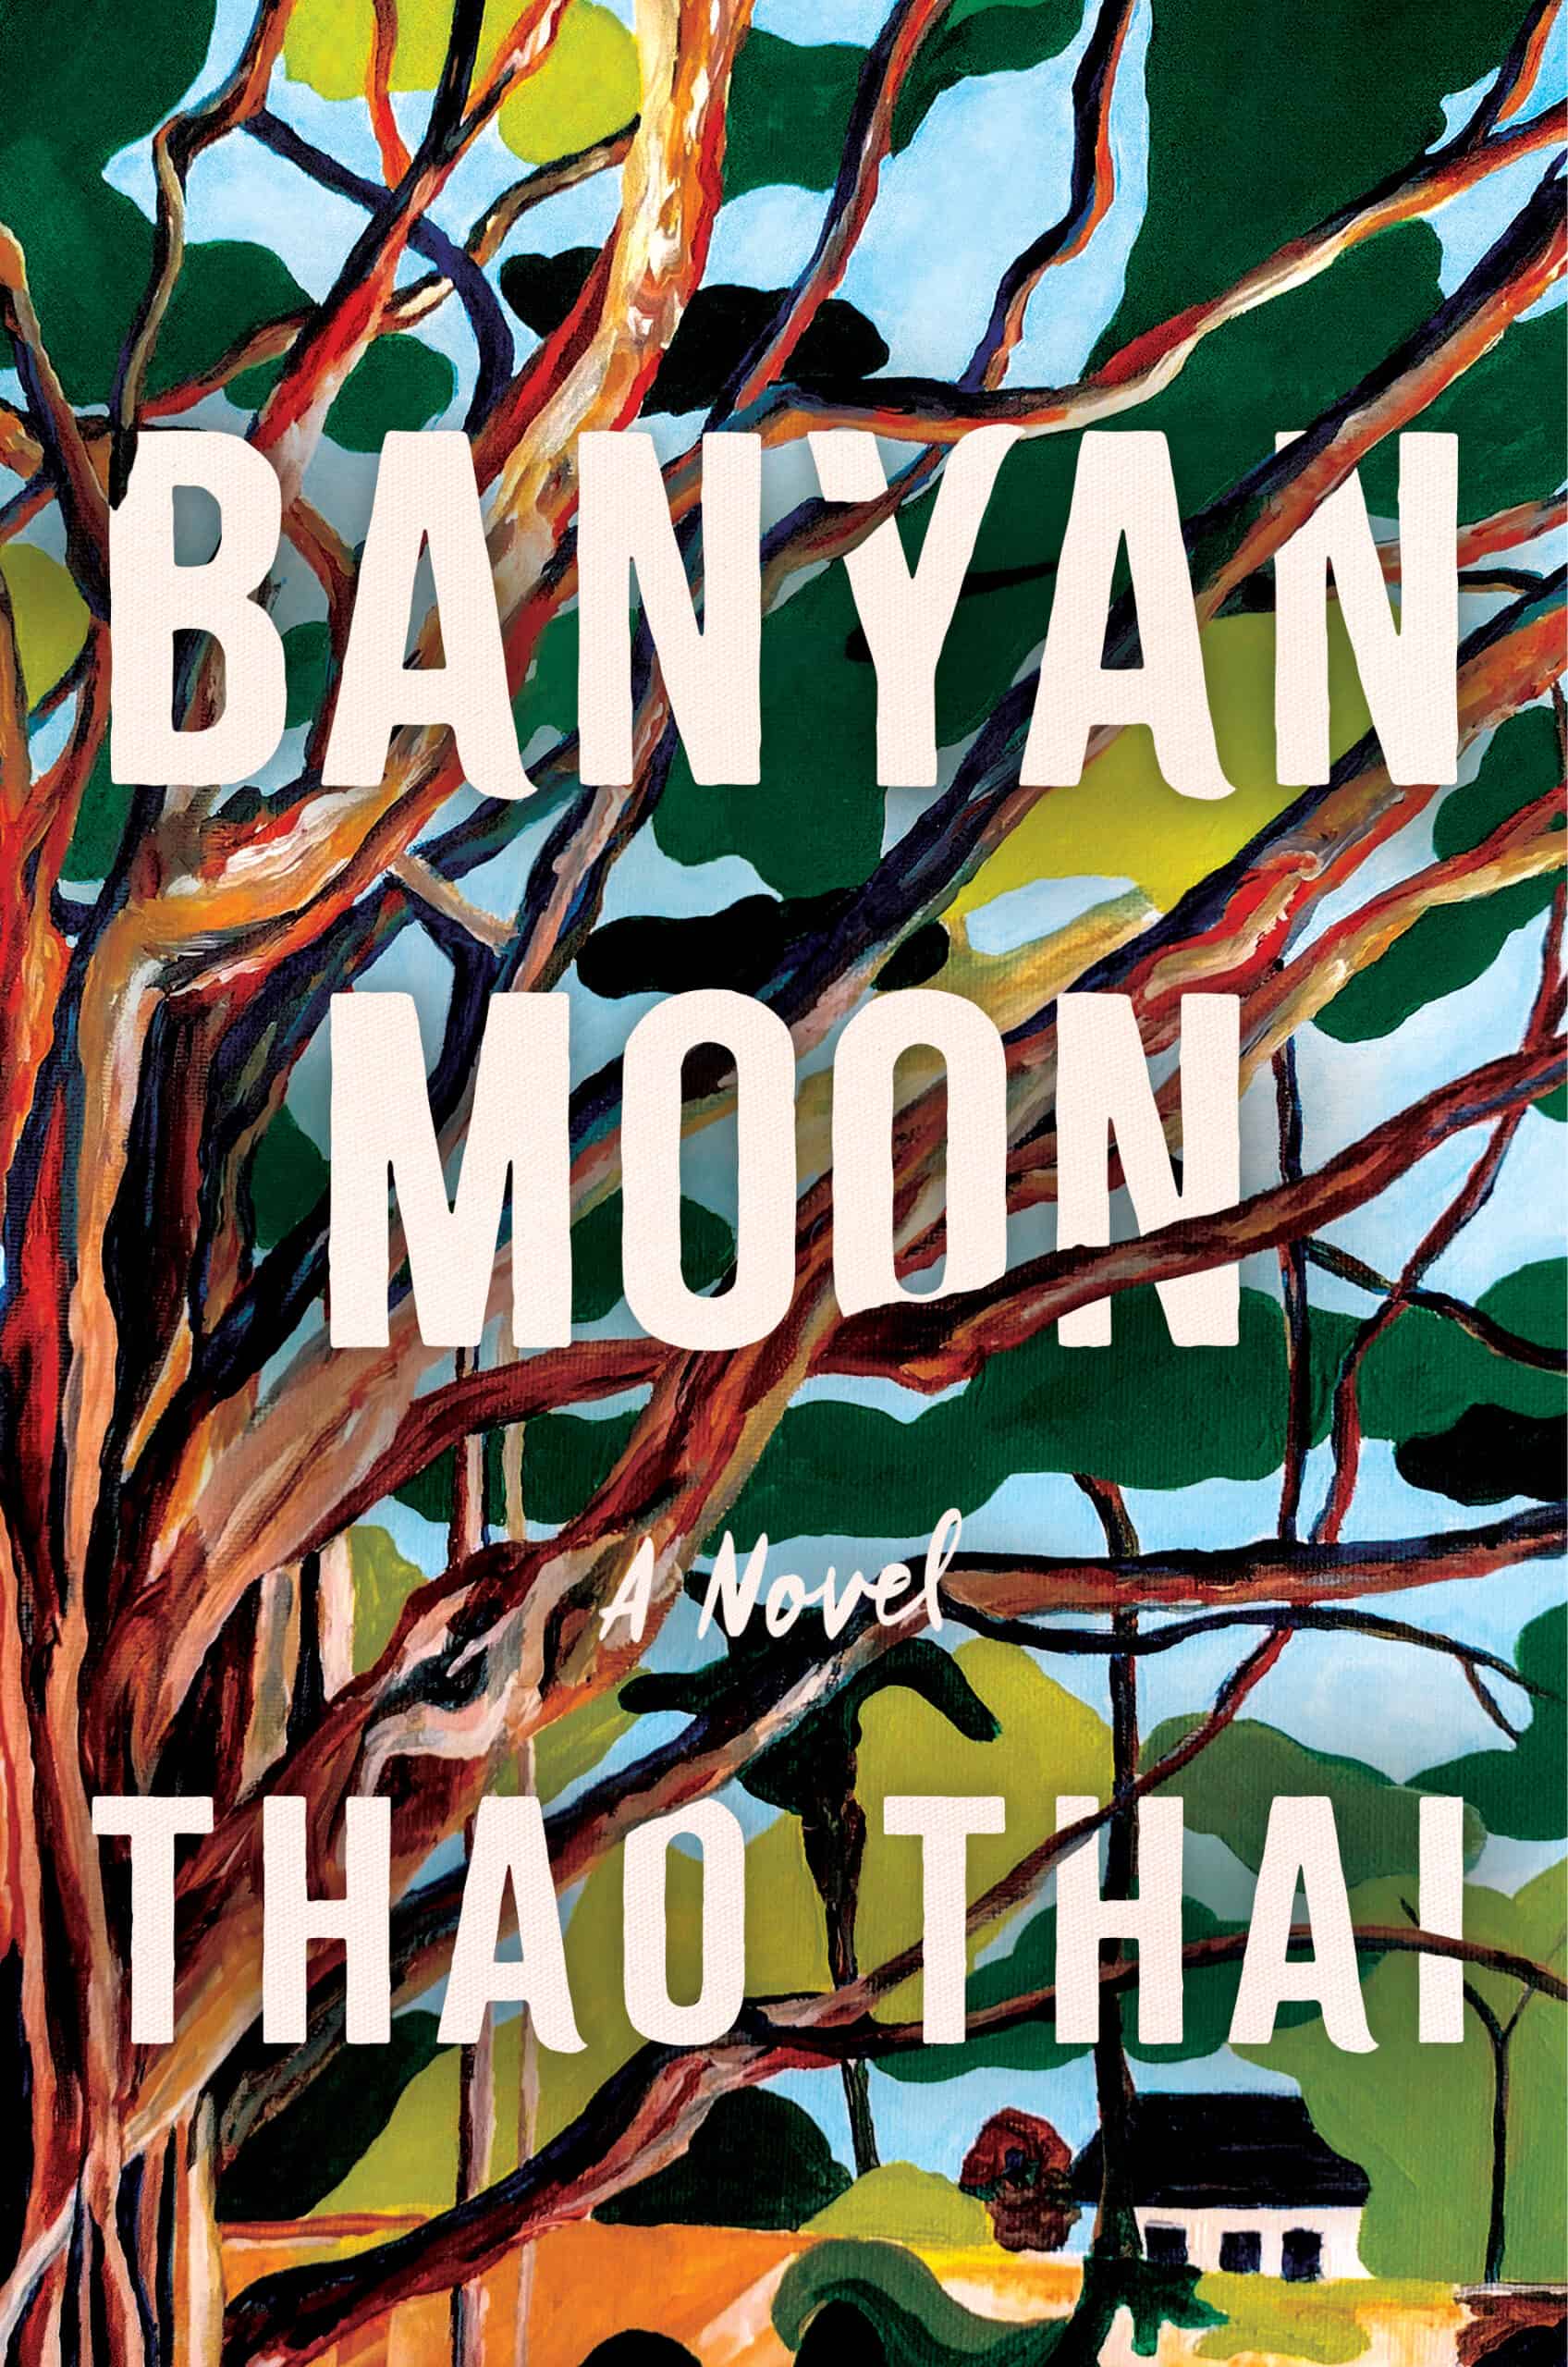 Book - Banyan Moon by Thao Thai